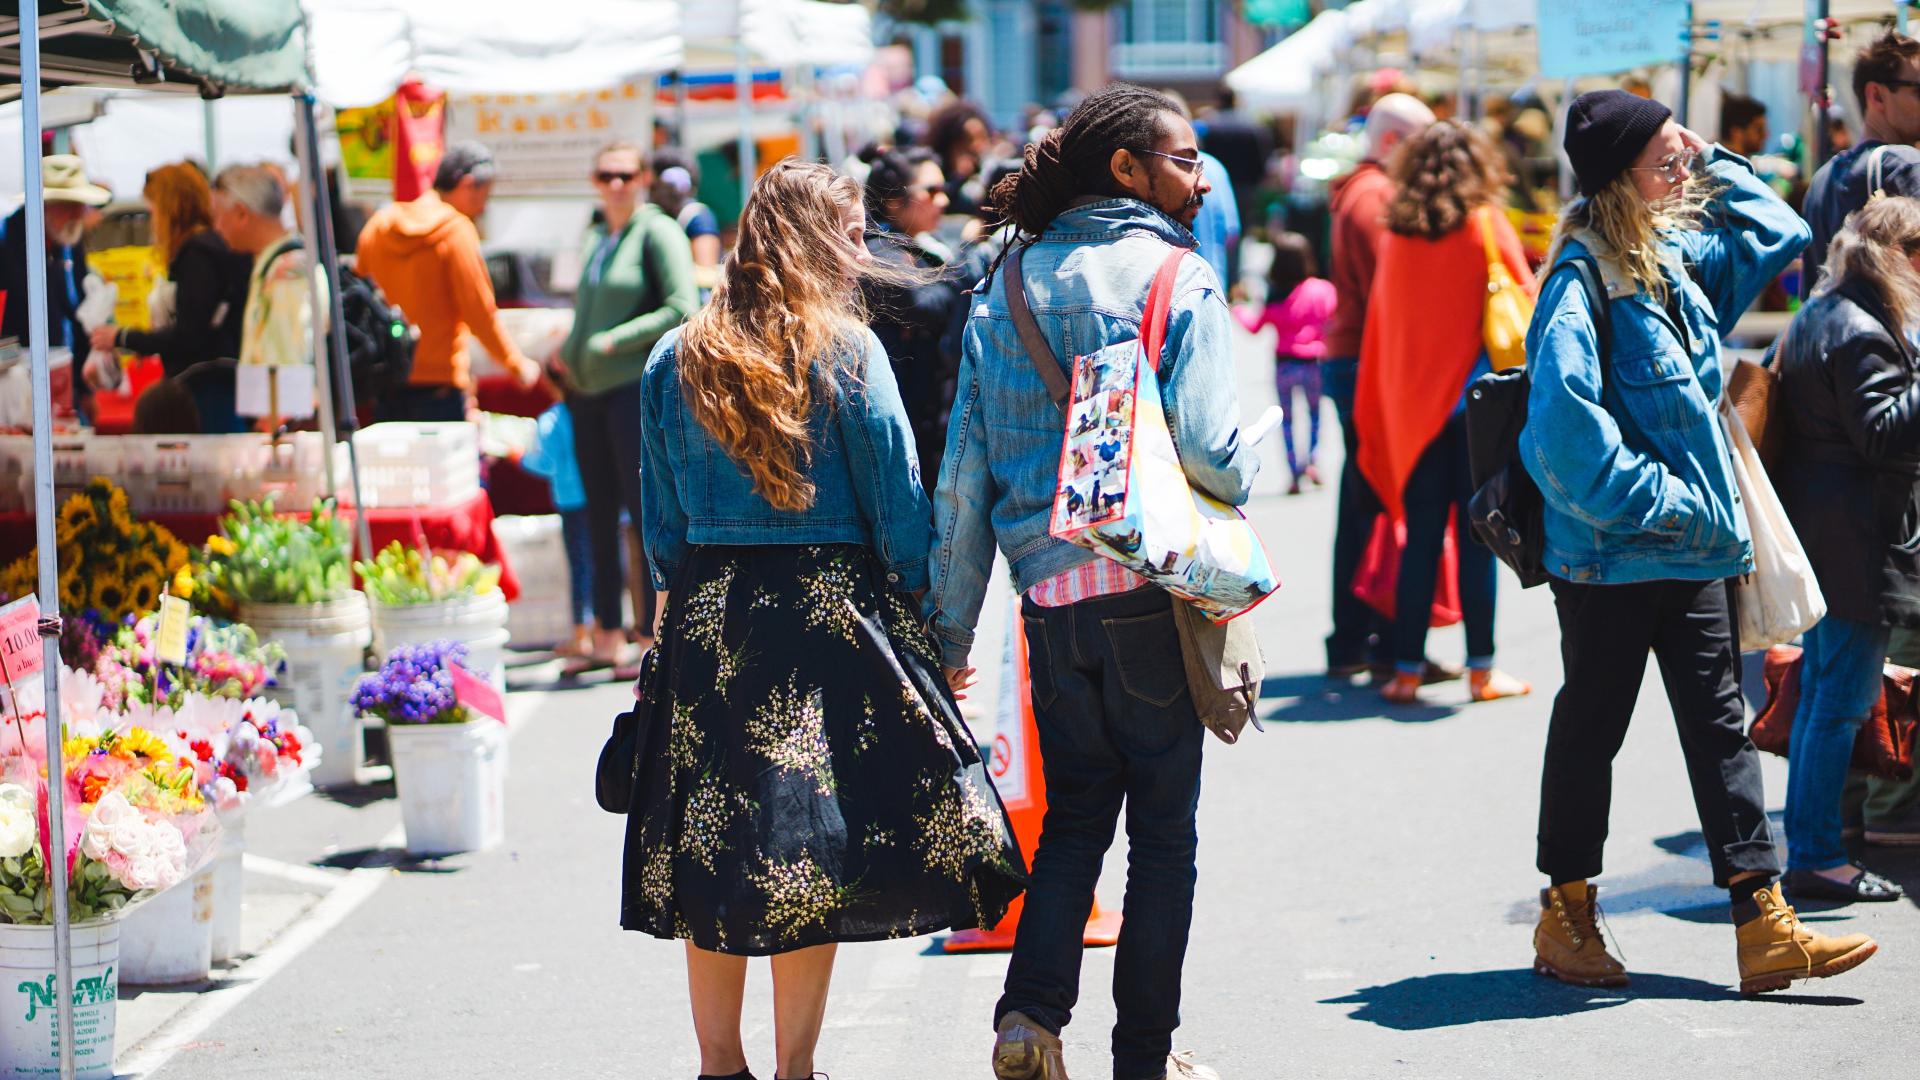 Customers walking in a market